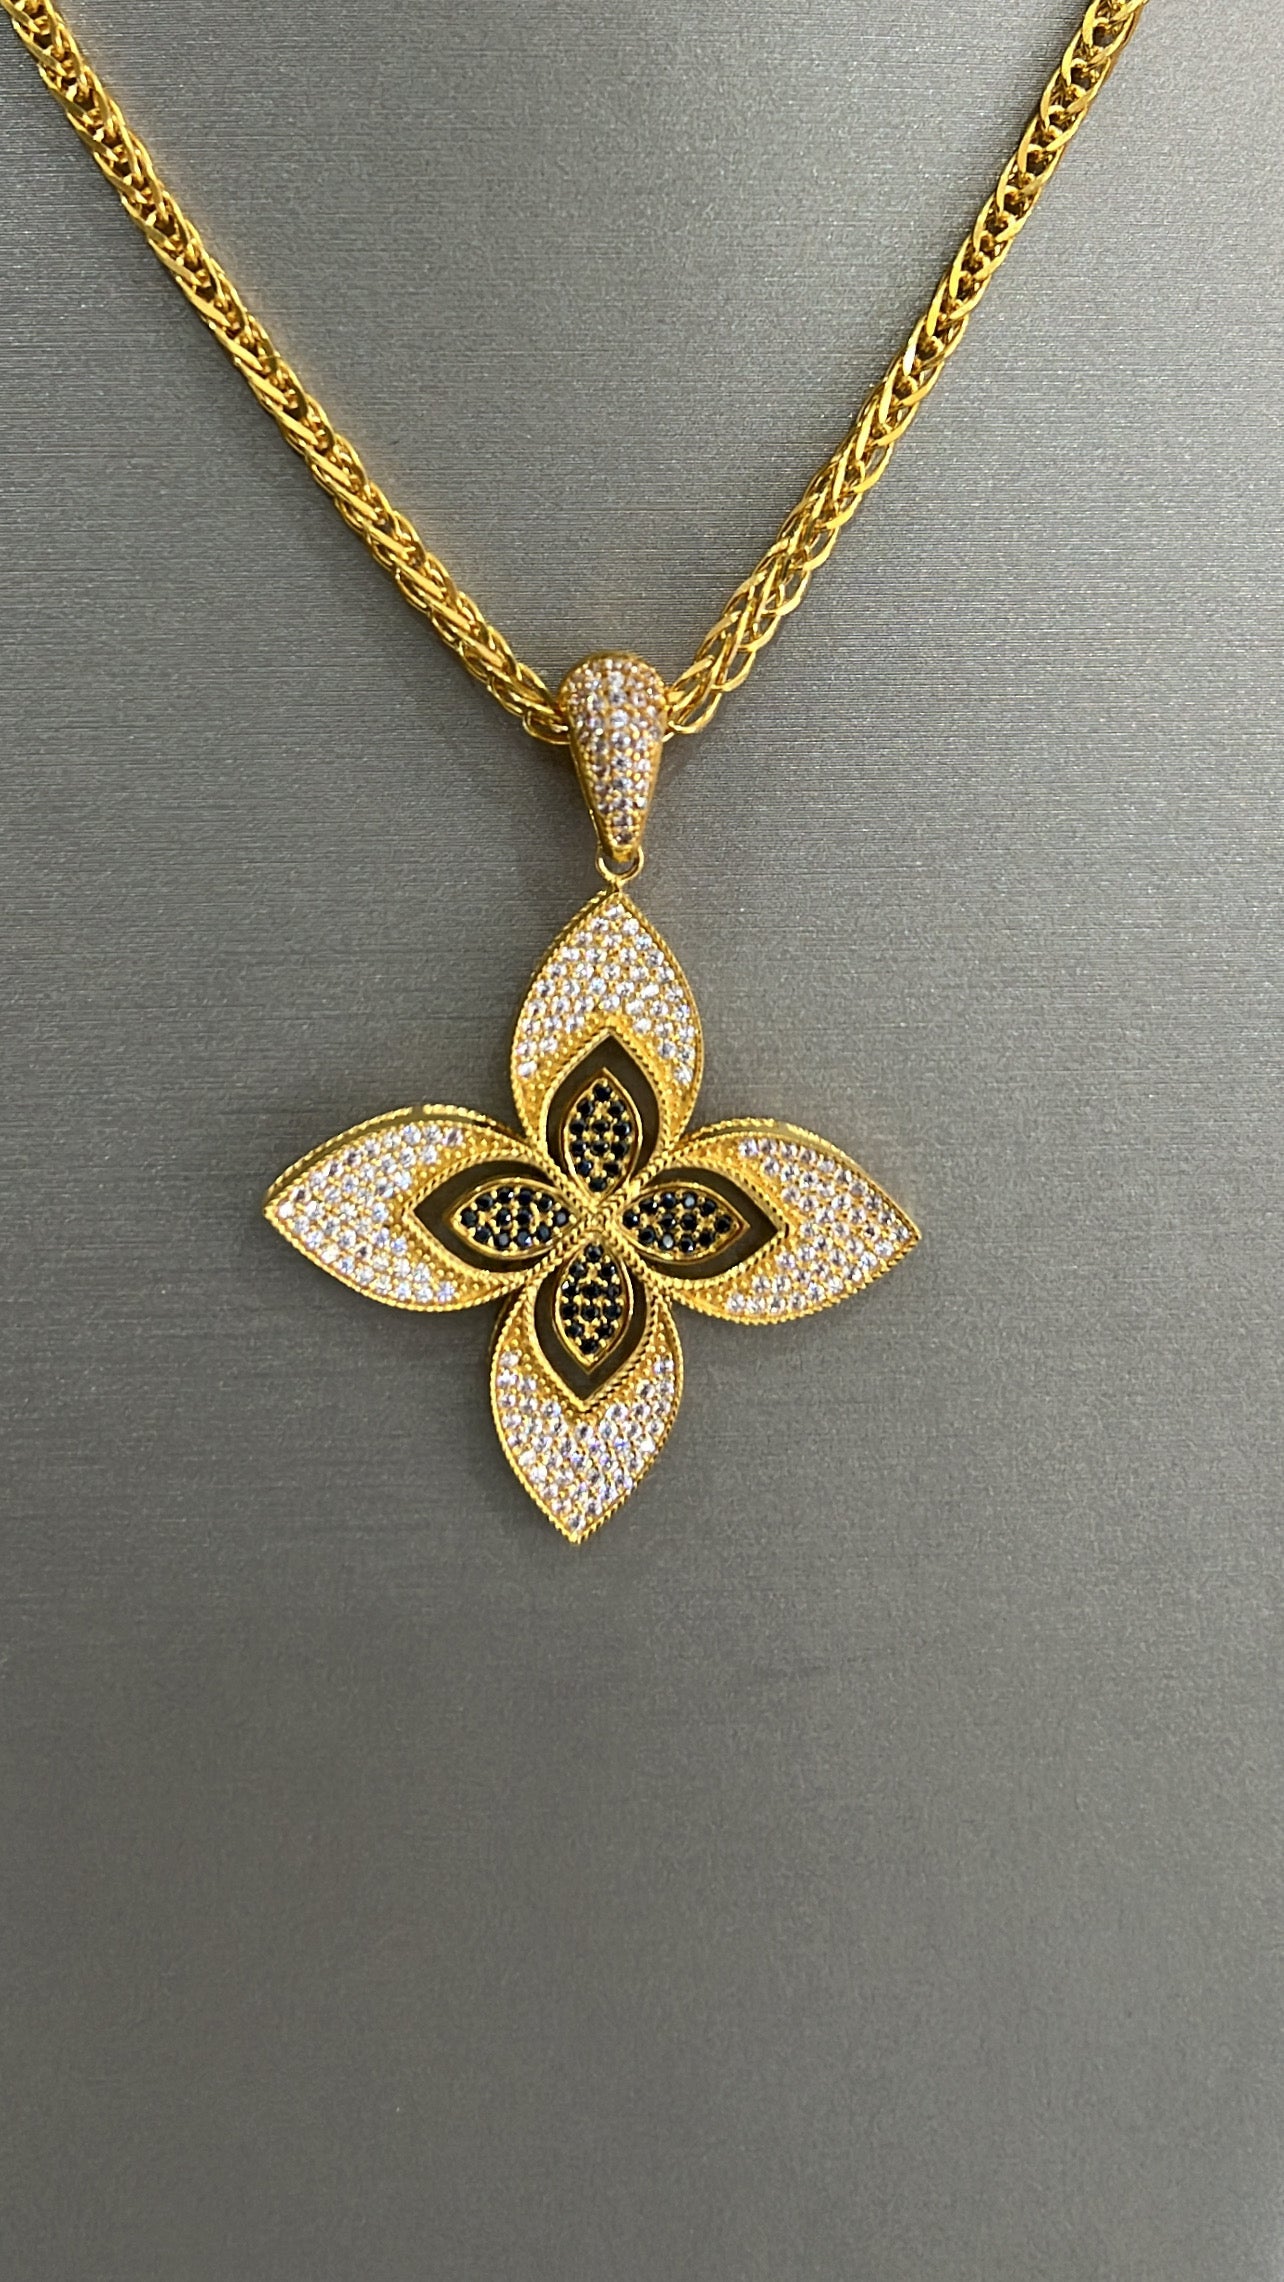 21k gold Flower necklace